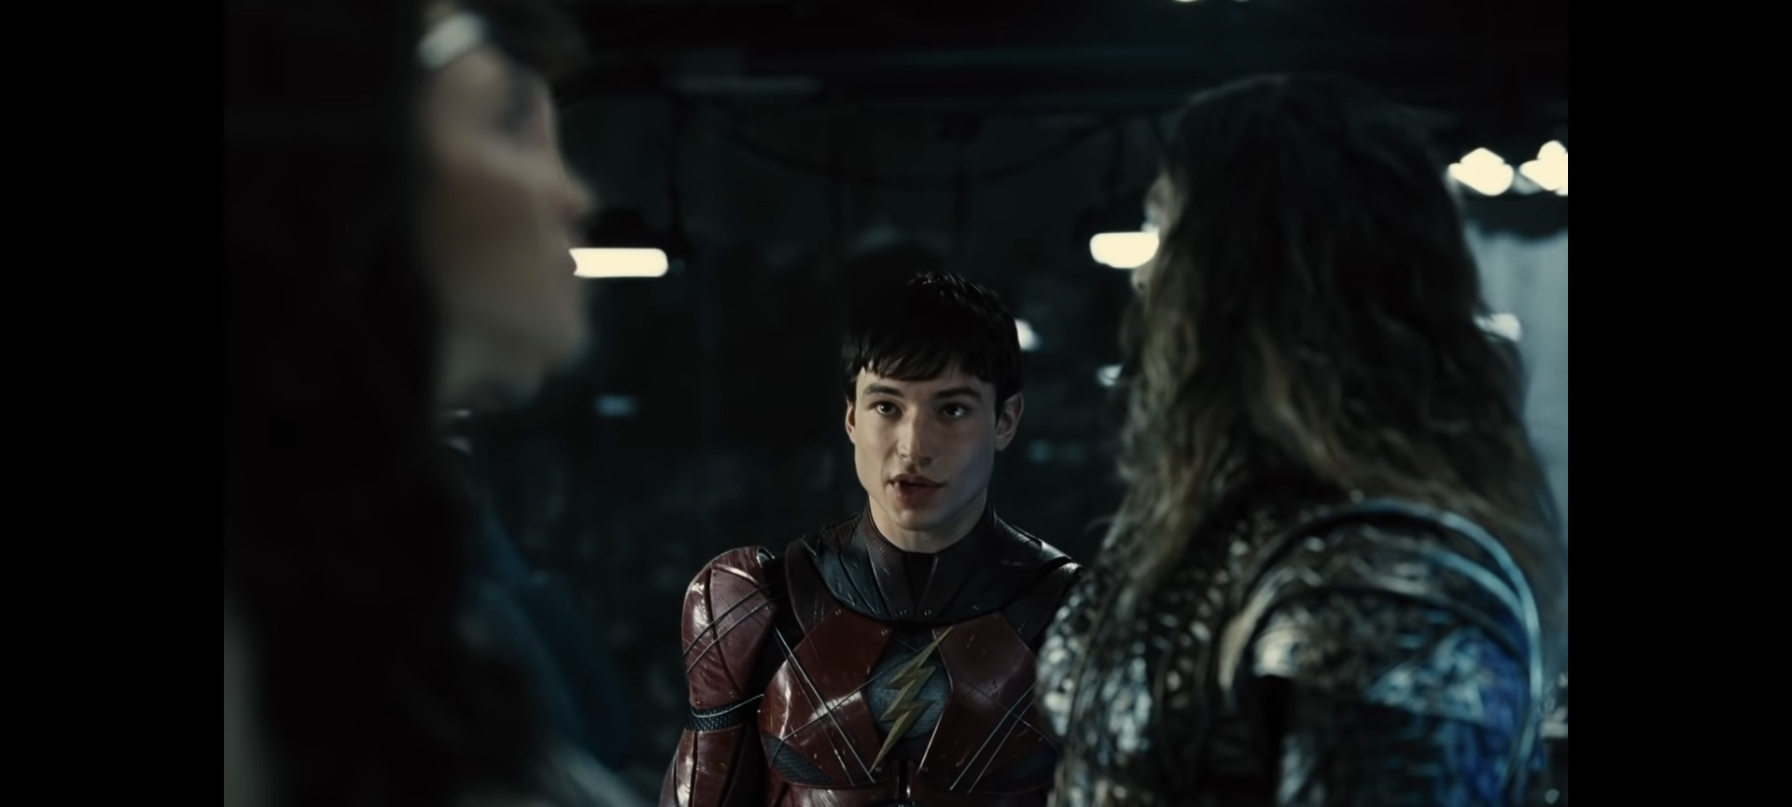 ازرا میلر در صحنه سریال تلویزیونی Zack Snyder's Justice League به همراه جیسون ماموا و گال گدوت